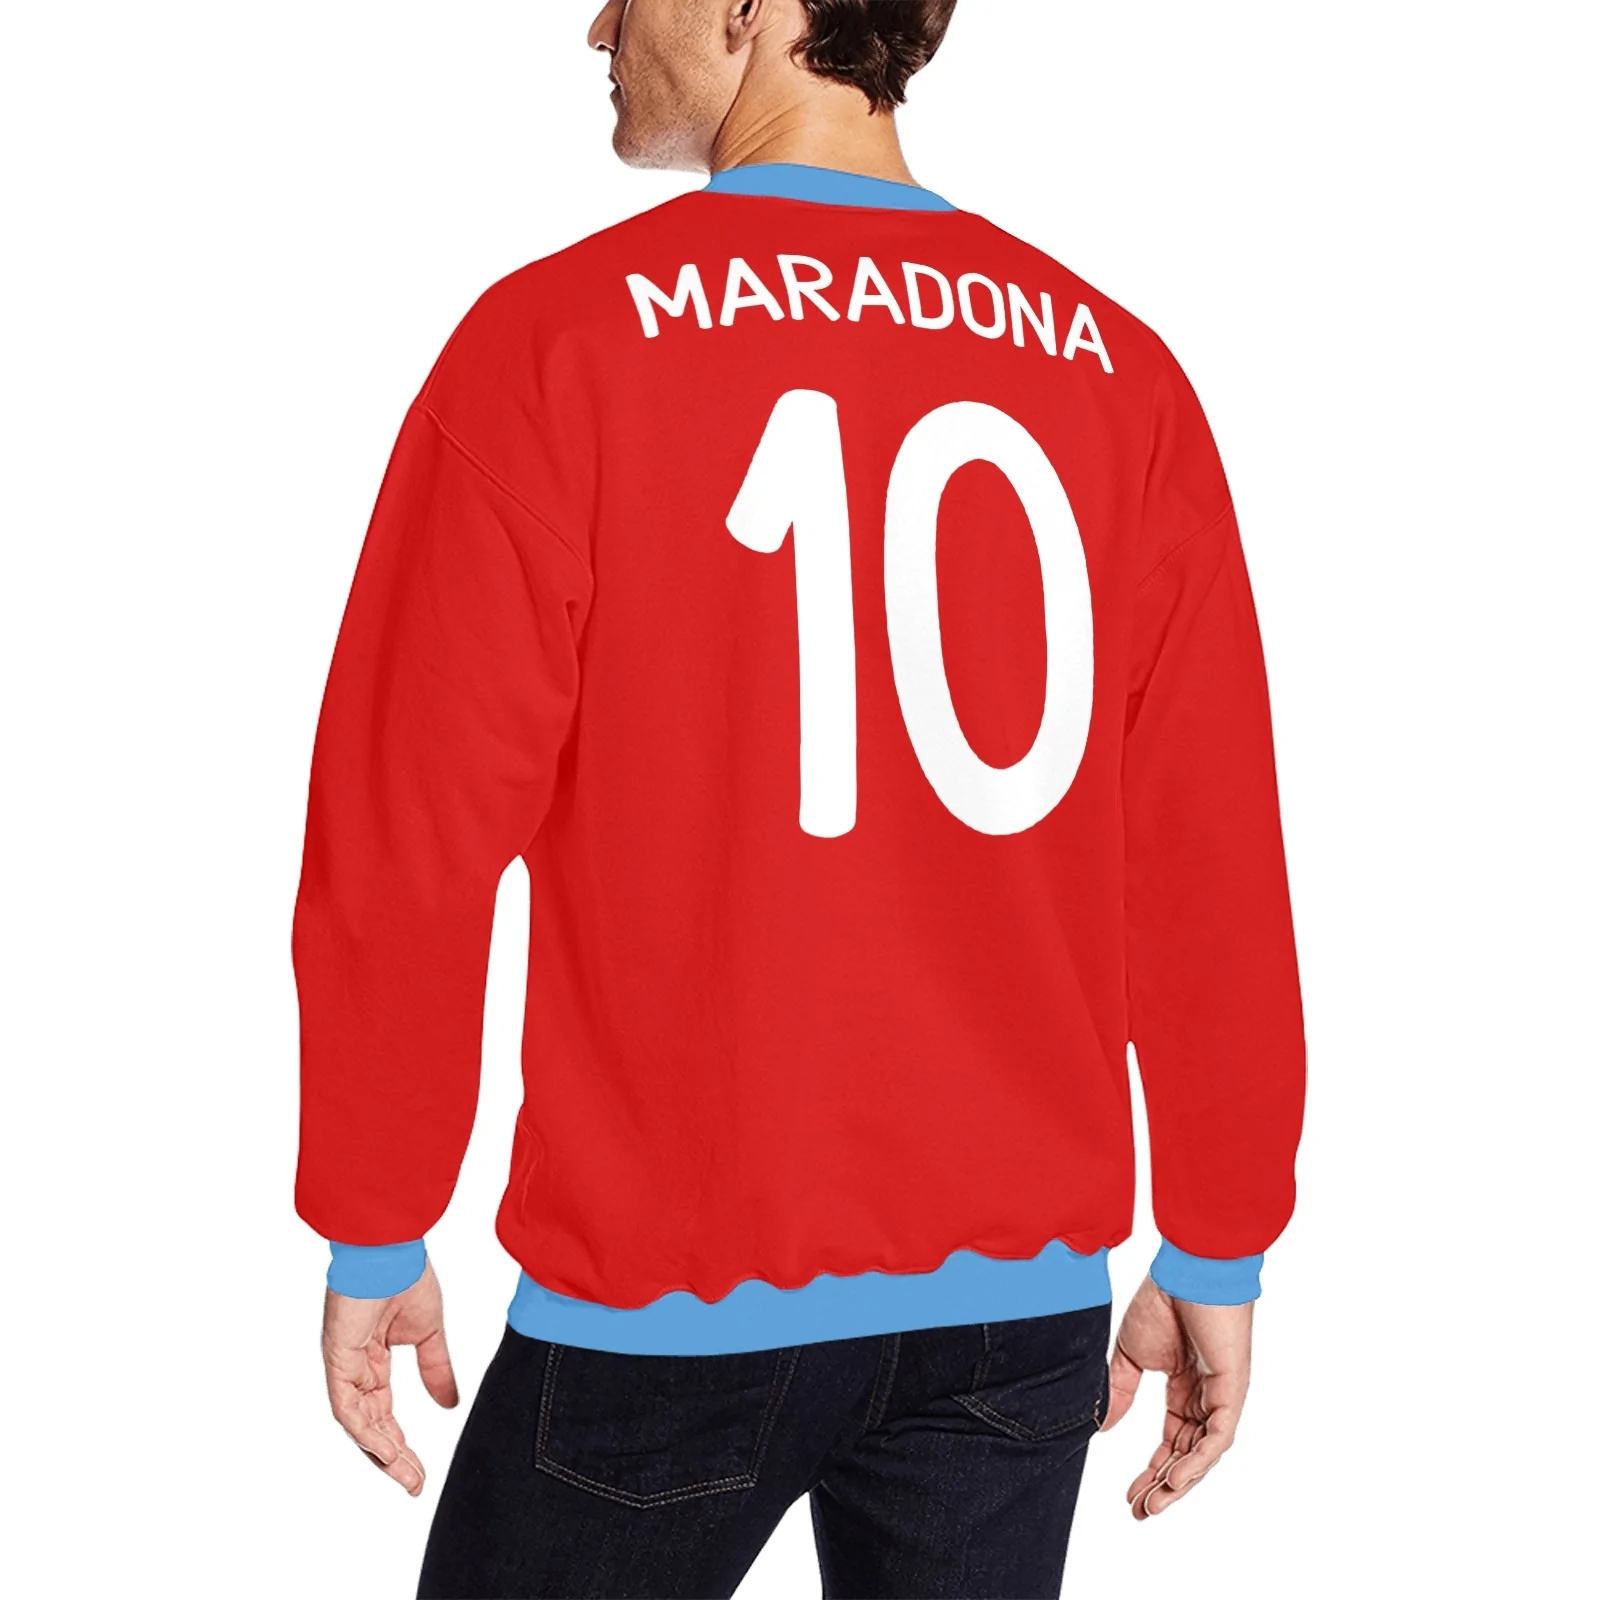 Napoli 1987 1988 Maradona 10 Away Red Shirt Long Sleeve